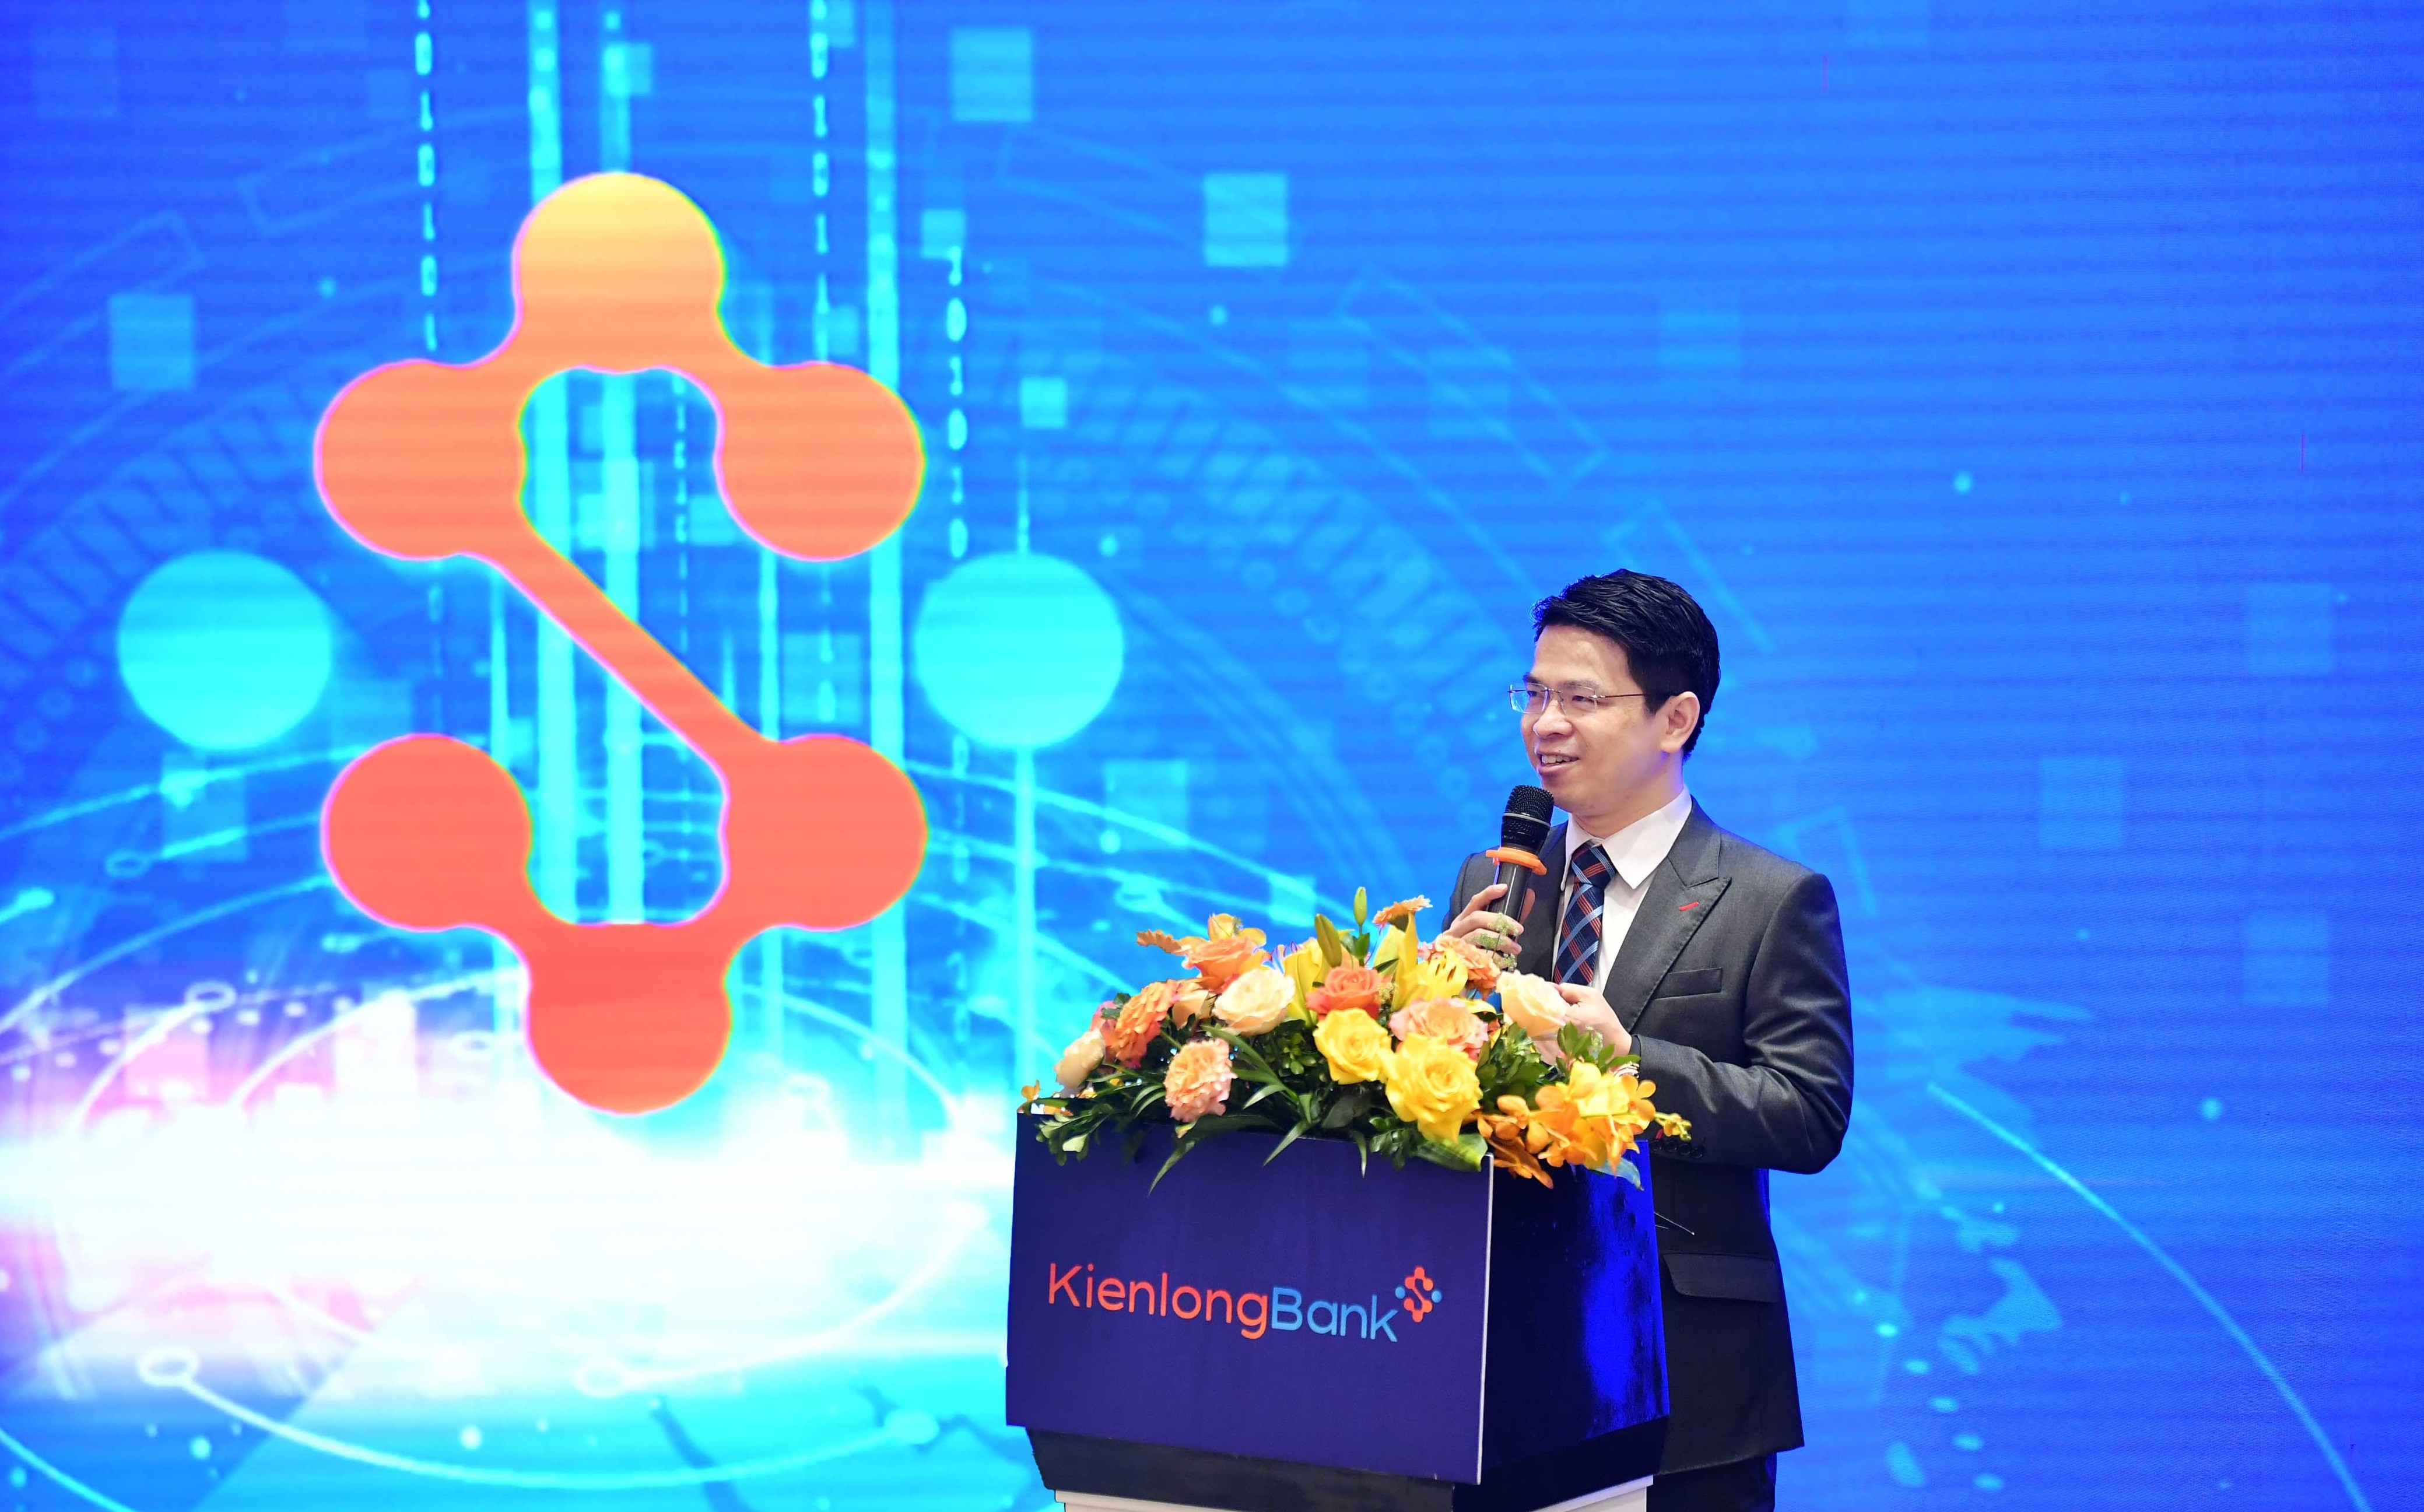 Kinh tế - KienlongBank vận hành chính thức hệ thống ngân hàng lõi mới hiện đại, nâng cao chất lượng dịch vụ ngân hàng 